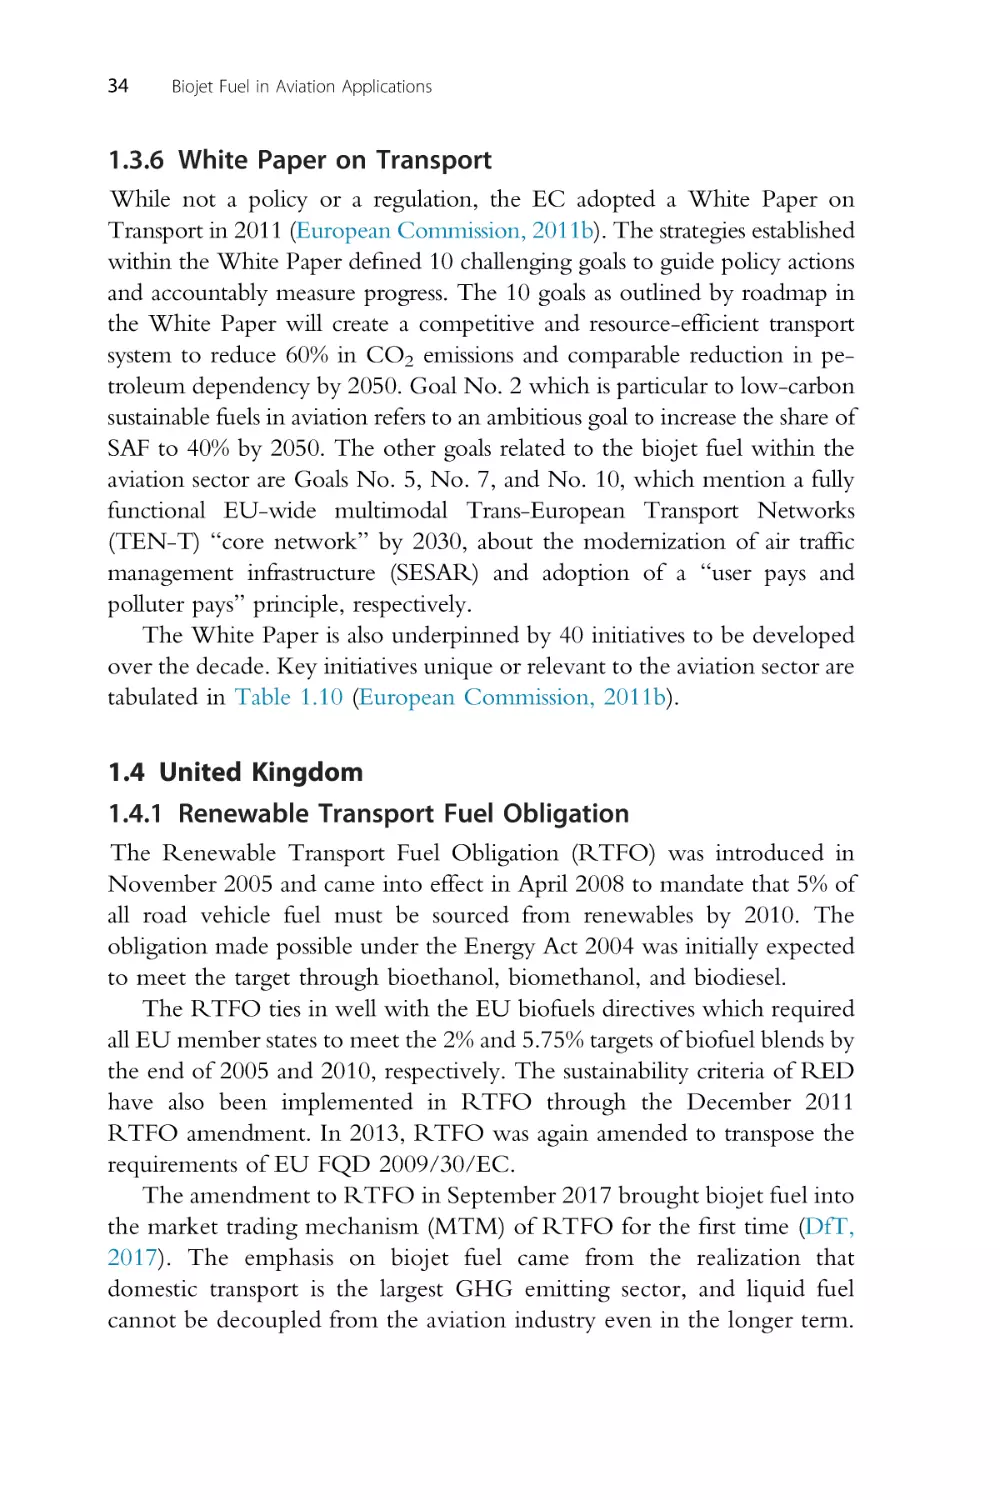 1.3.6 White Paper on Transport
1.4 United Kingdom
1.4.1 Renewable Transport Fuel Obligation